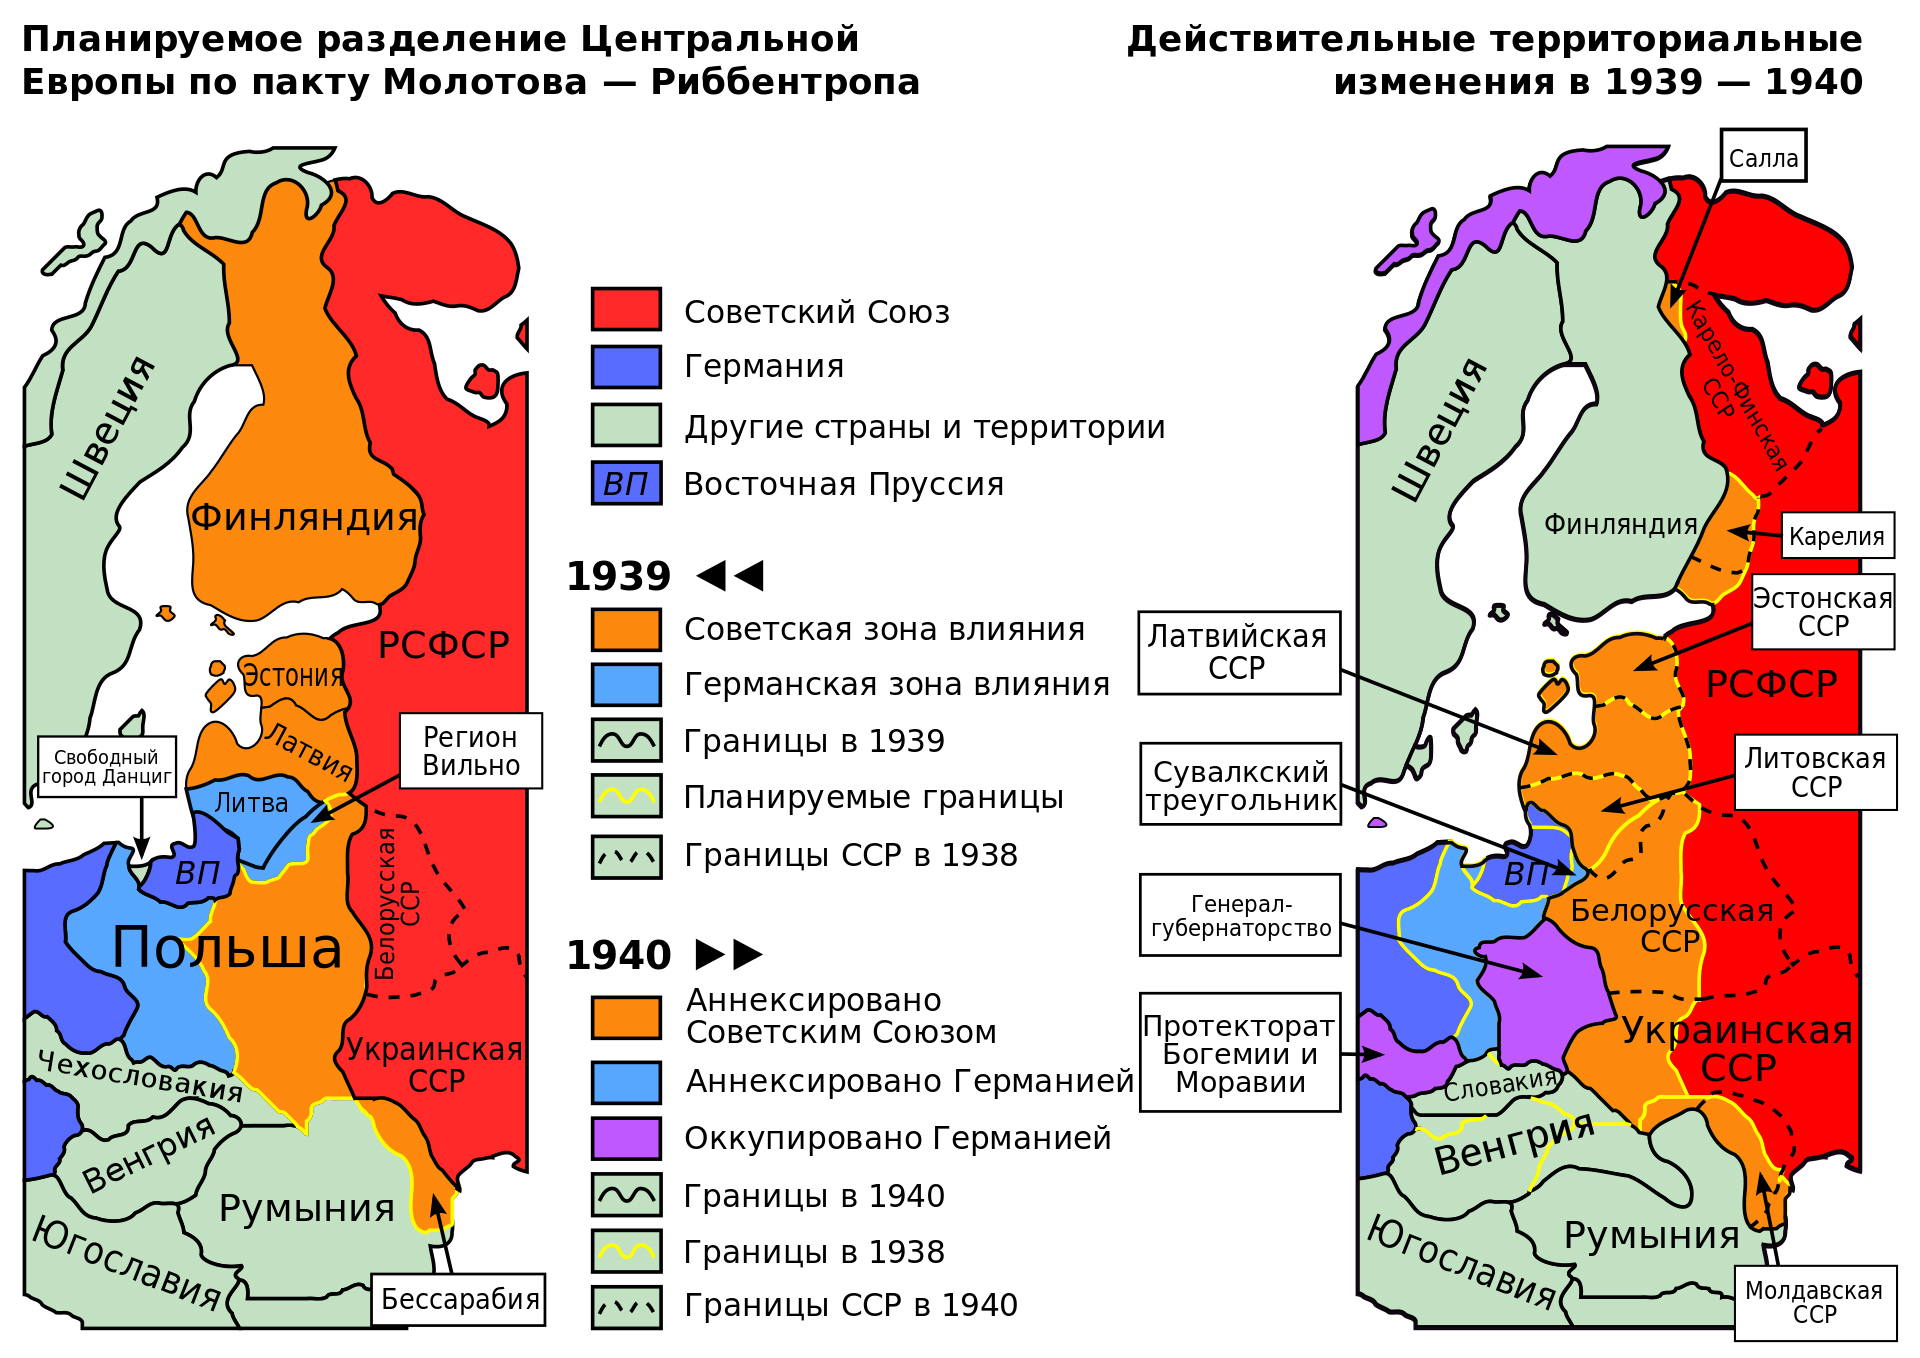 План разделения по пакту Молотова – Риббентропа. Фото (c) Wikipedia